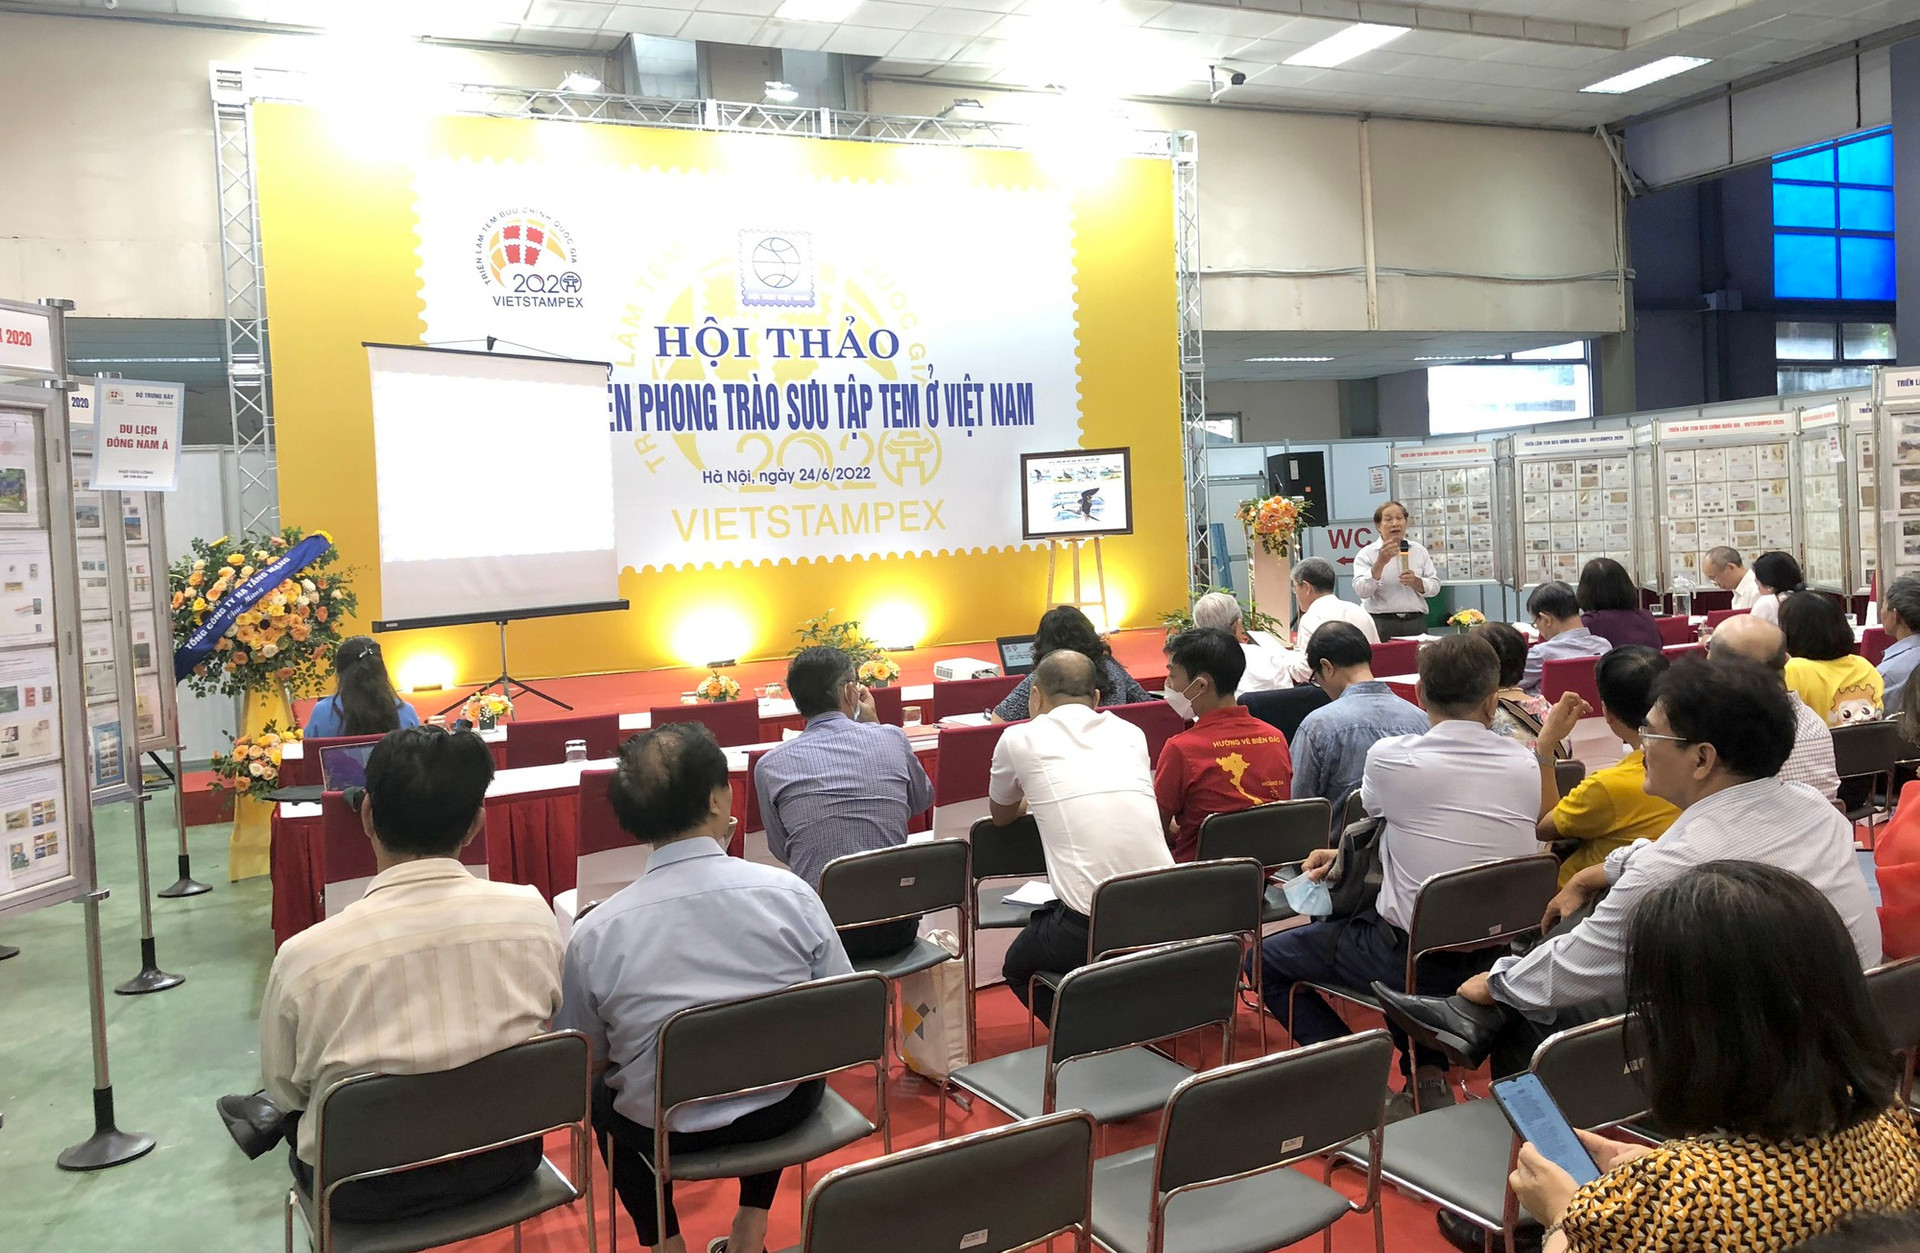 Đề xuất nhiều giải pháp phát triển phong trào sưu tập tem Việt Nam - Ảnh 3.